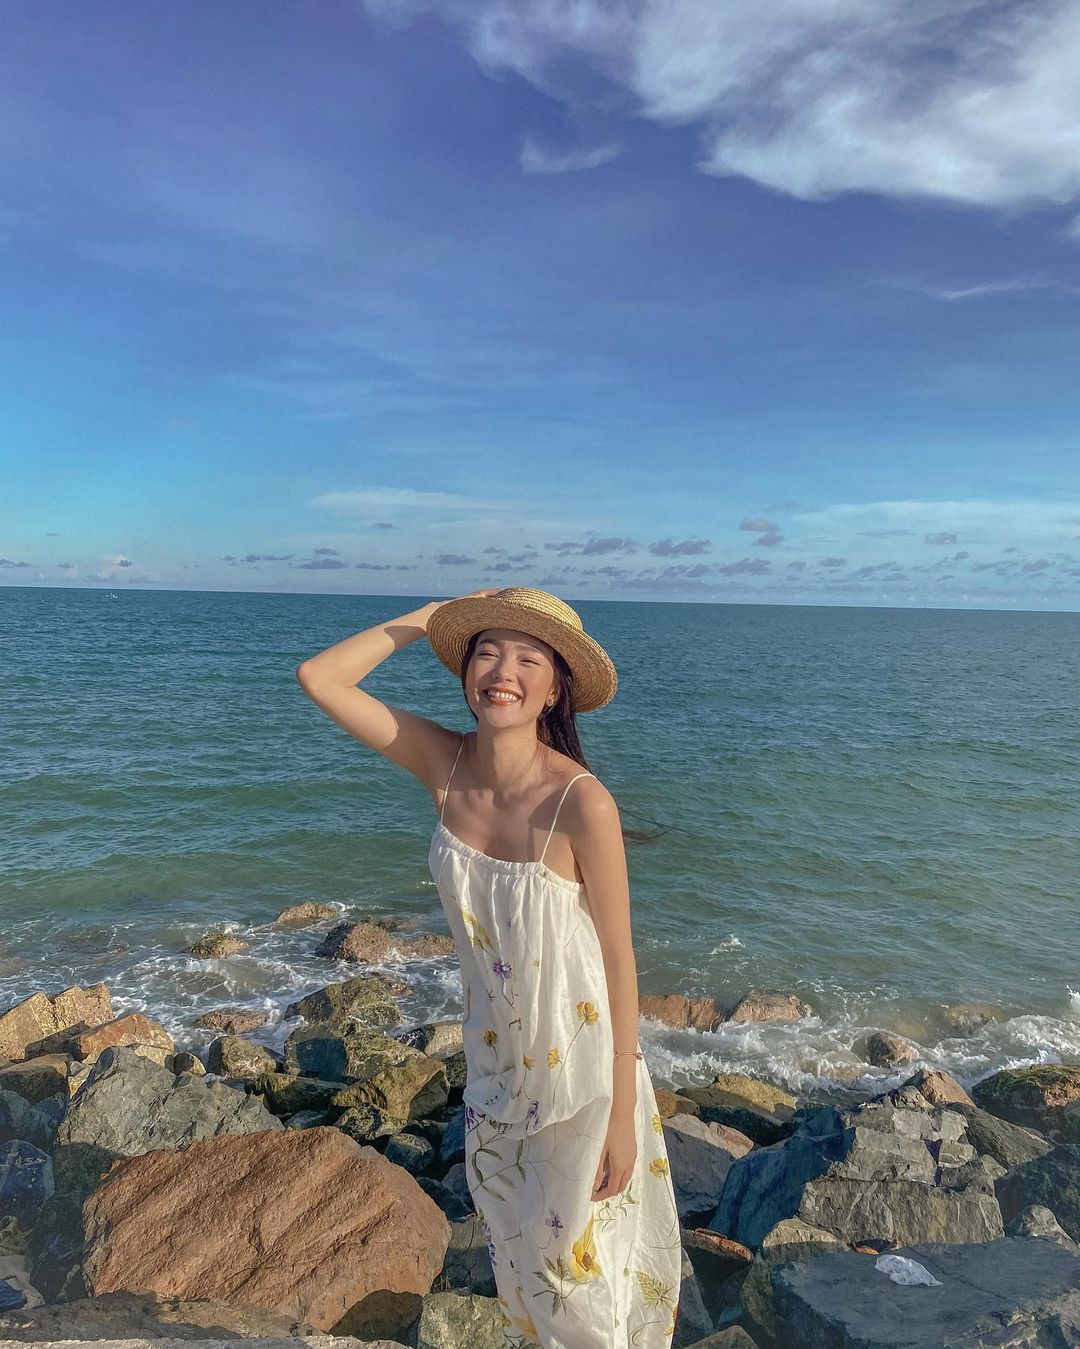 Minh Hằng khoe vẻ rạng rỡ, xinh tươi trong chuyến du lịch nghỉ dưỡng biển. Cô hào hứng: 'Young, wild and free' (Tuổi trẻ, hoang dại và tự do).